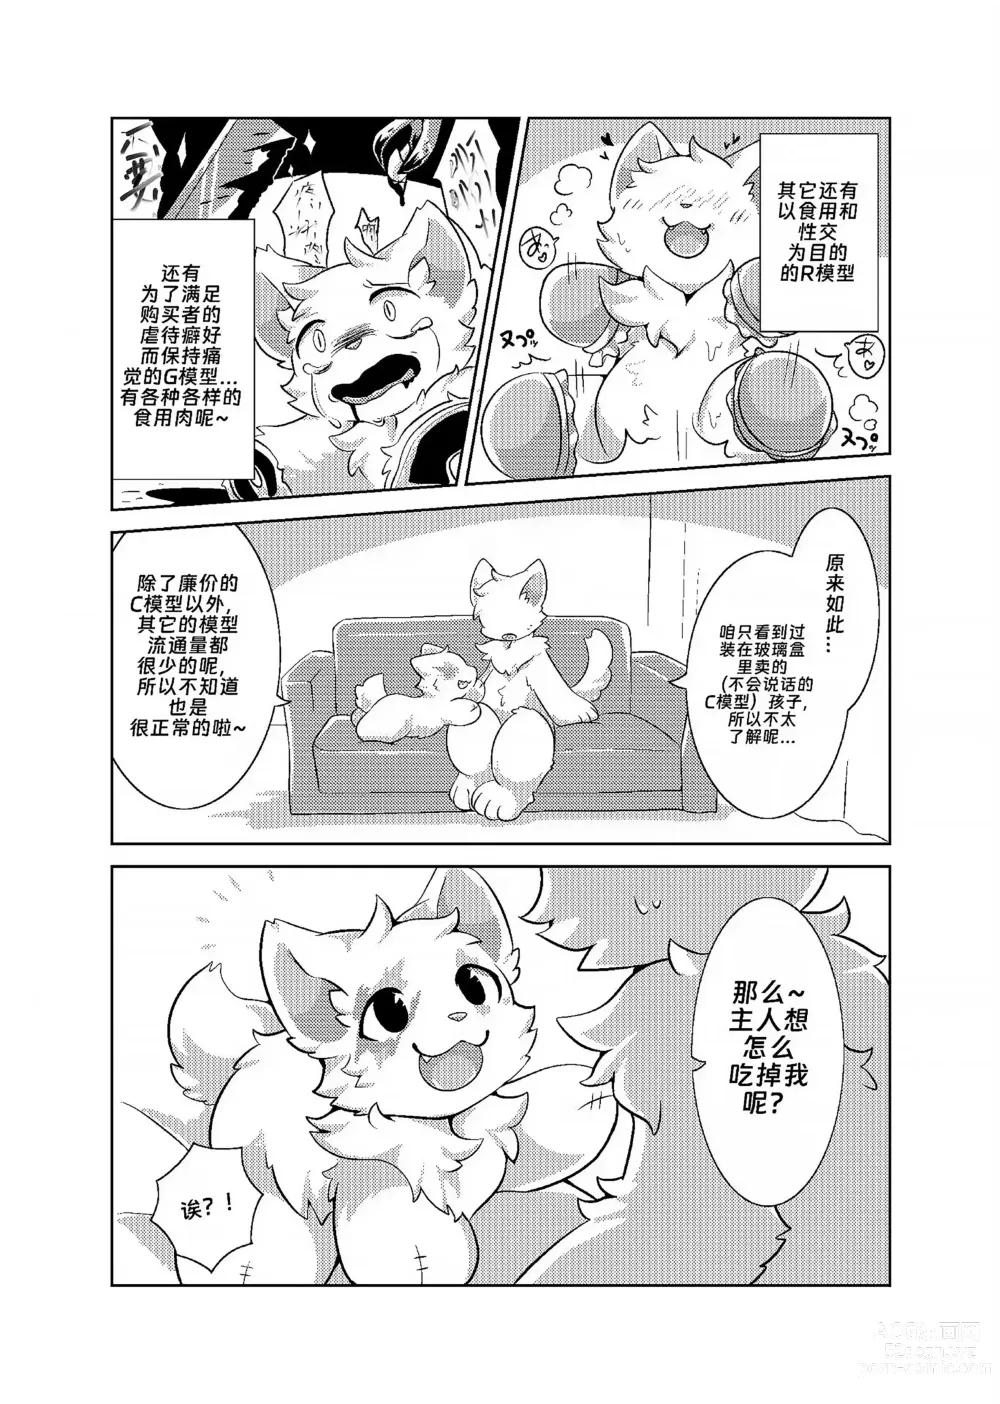 Page 7 of doujinshi Bokuyo motsuni no oishii seikatu.R-18G